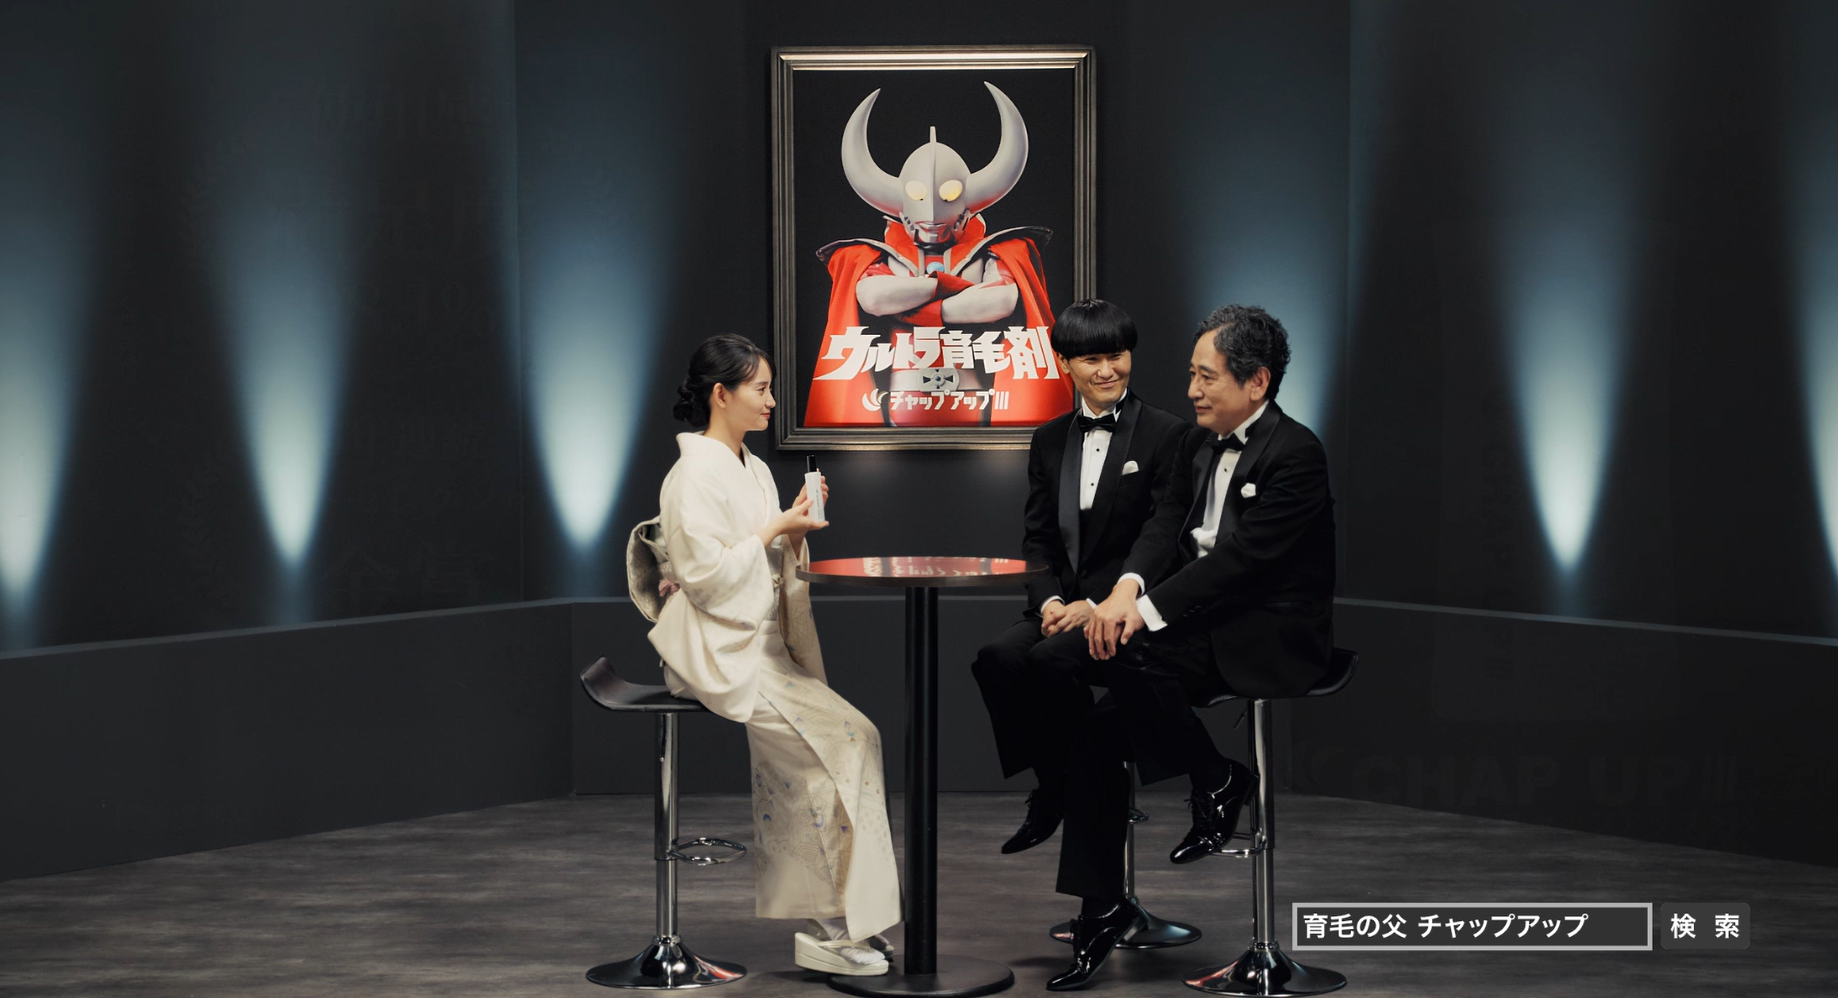 ルー大柴さん、永尾まりやさん出演
「チャップアップ育毛剤」TVCMが
バージョンアップして放映開始！
大人の「かっこいい」を語る